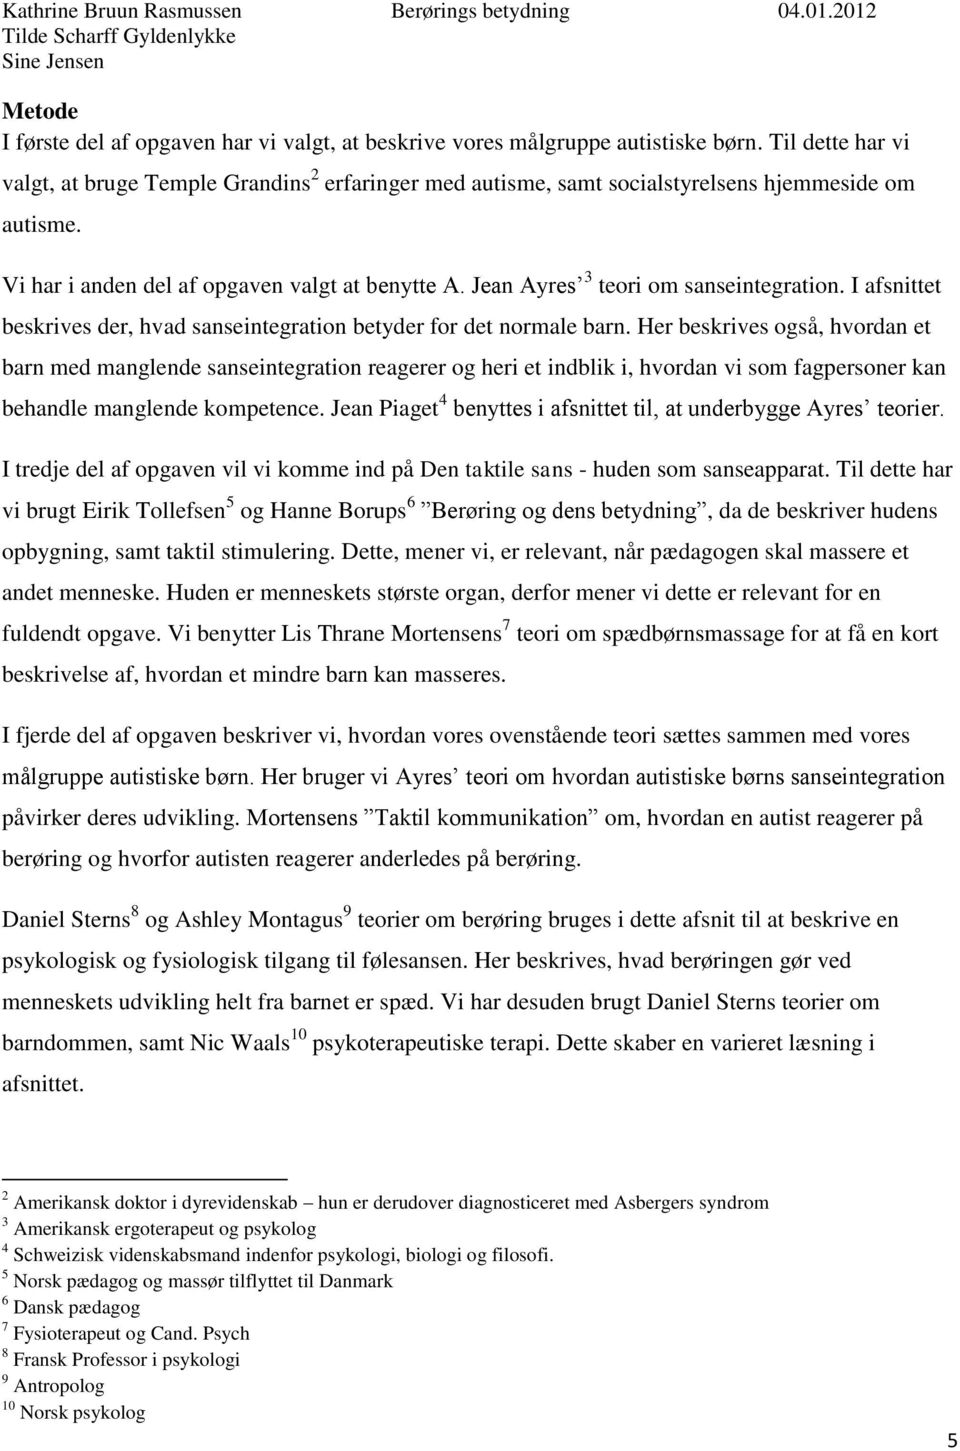 Indholdsfortegnelse Indledning Problemformulering Emneafgrænsning Metode  Autisme Sanseintegration (Kathrine)... - PDF Gratis download